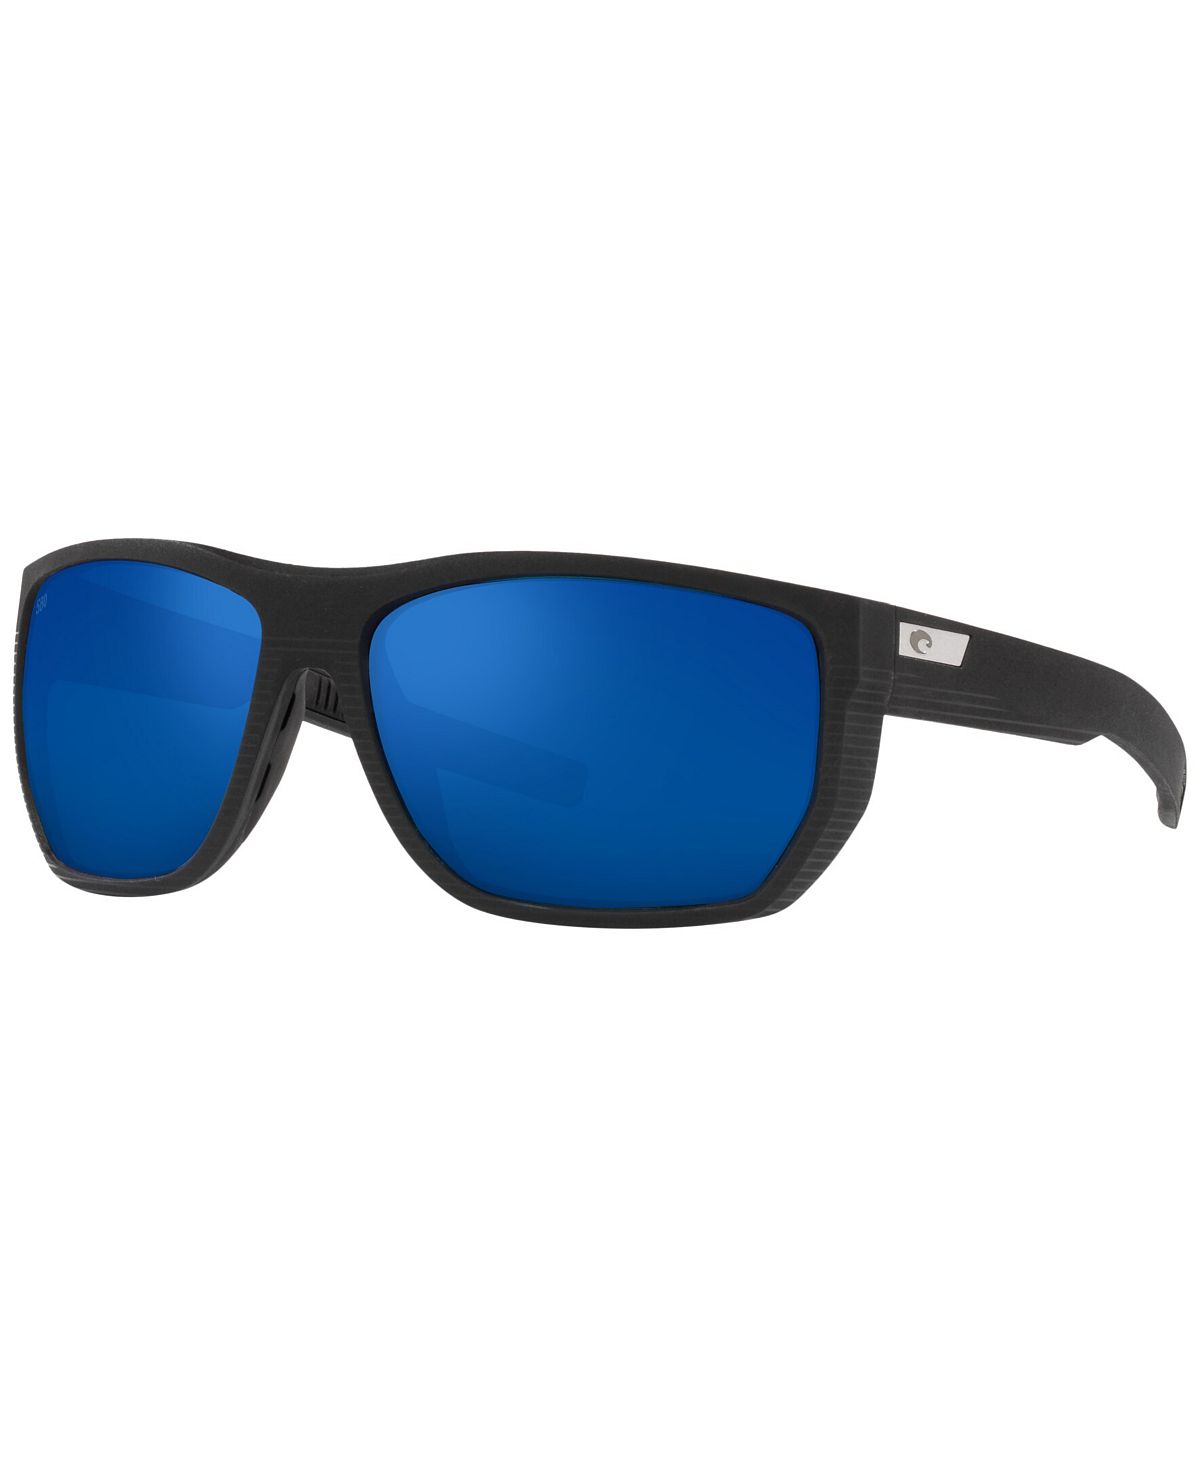 Мужские поляризованные солнцезащитные очки, 06s9085 santiago 63 Costa Del Mar, мульти